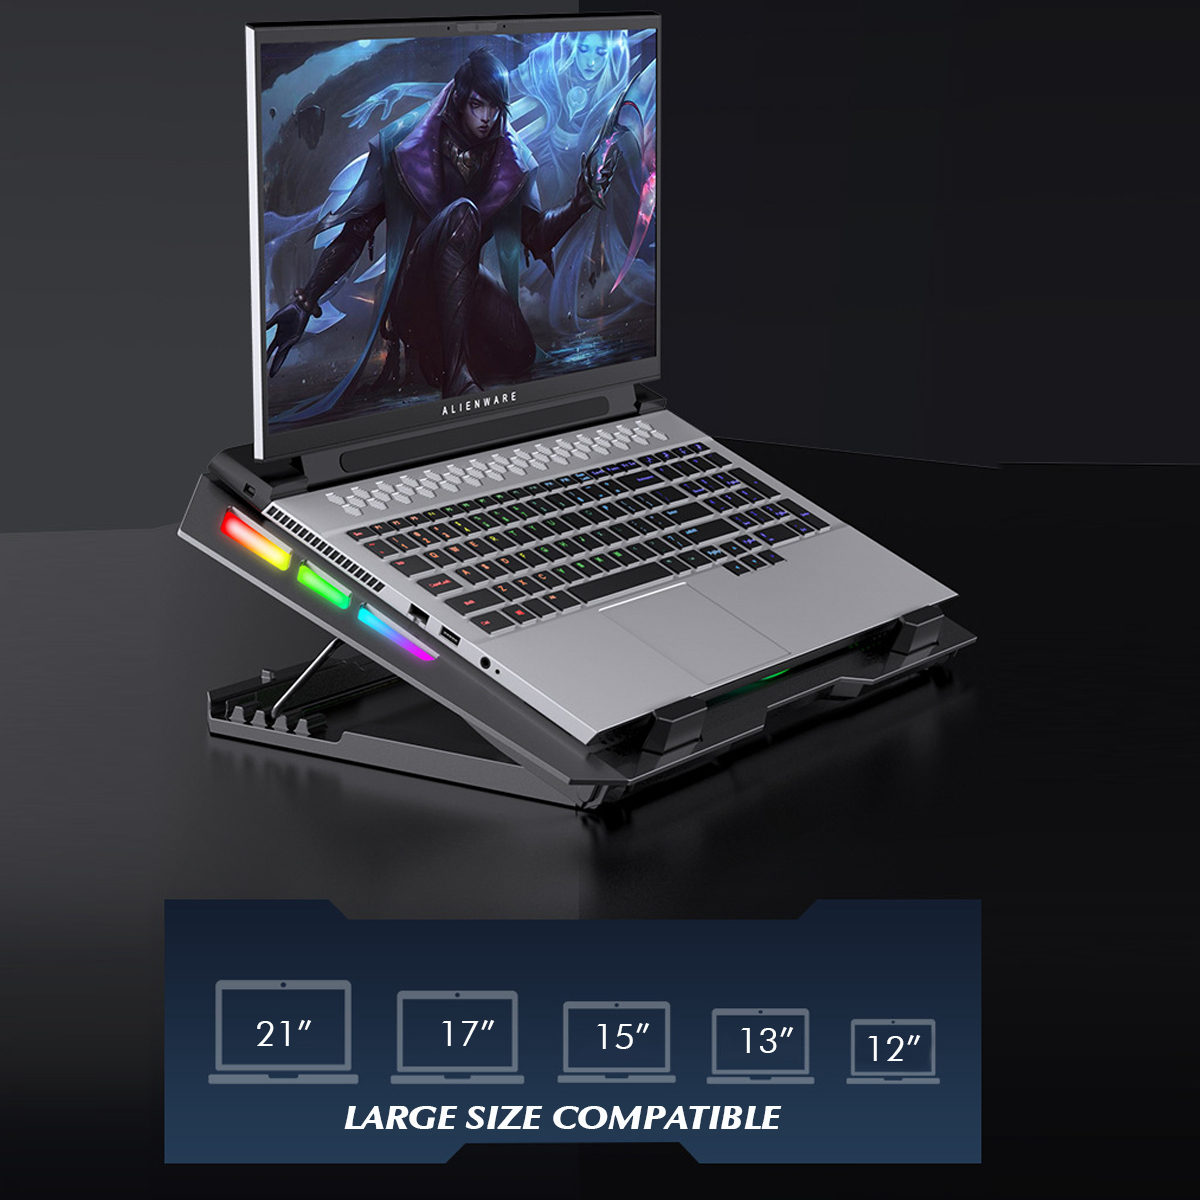 RGB-5-Gear-Angle-Adjustable-Macbook-Cooling-Stand-Dual-USB-Port-Desktop-Holder-Bracket-Compatible-wi-1861381-11